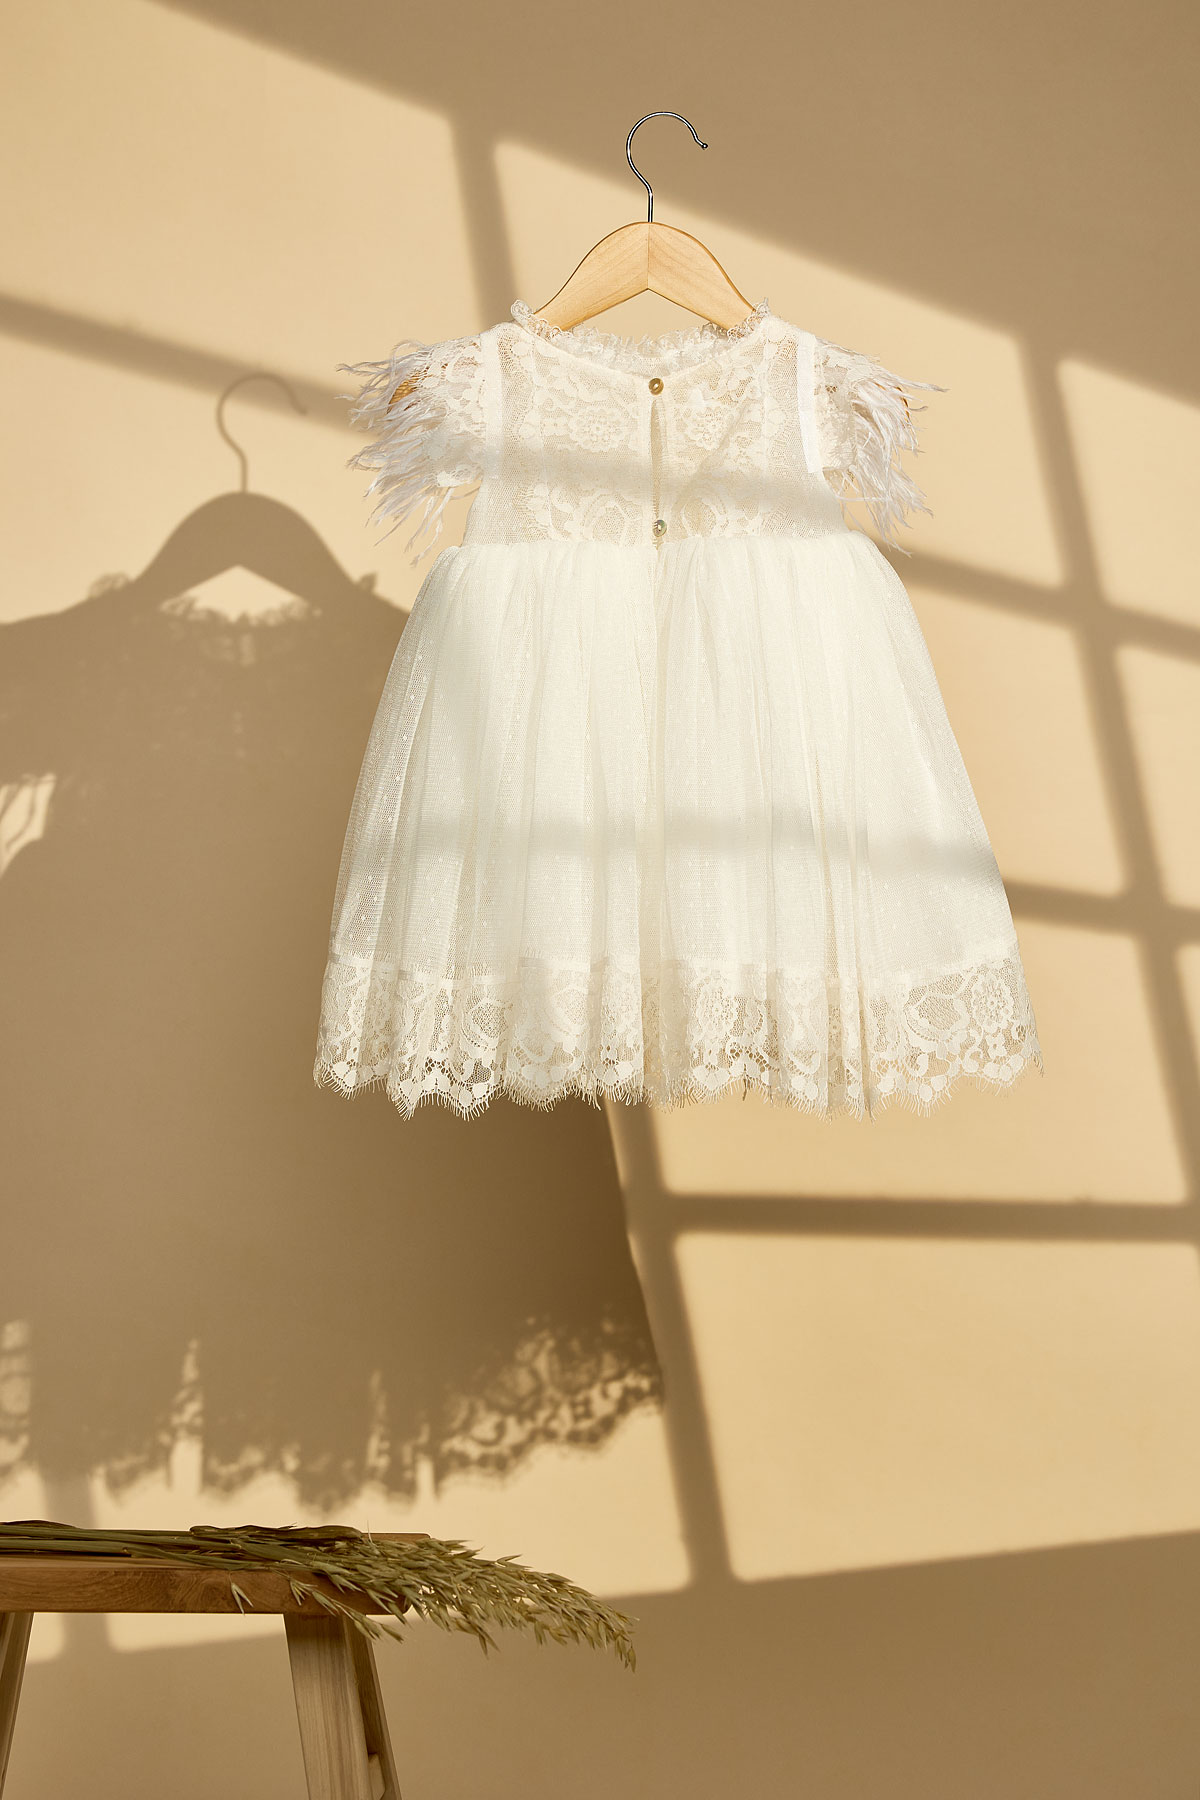 Εκρού βαπτιστικό φόρεμα με εκρού δαντέλα και εκρού φτερά